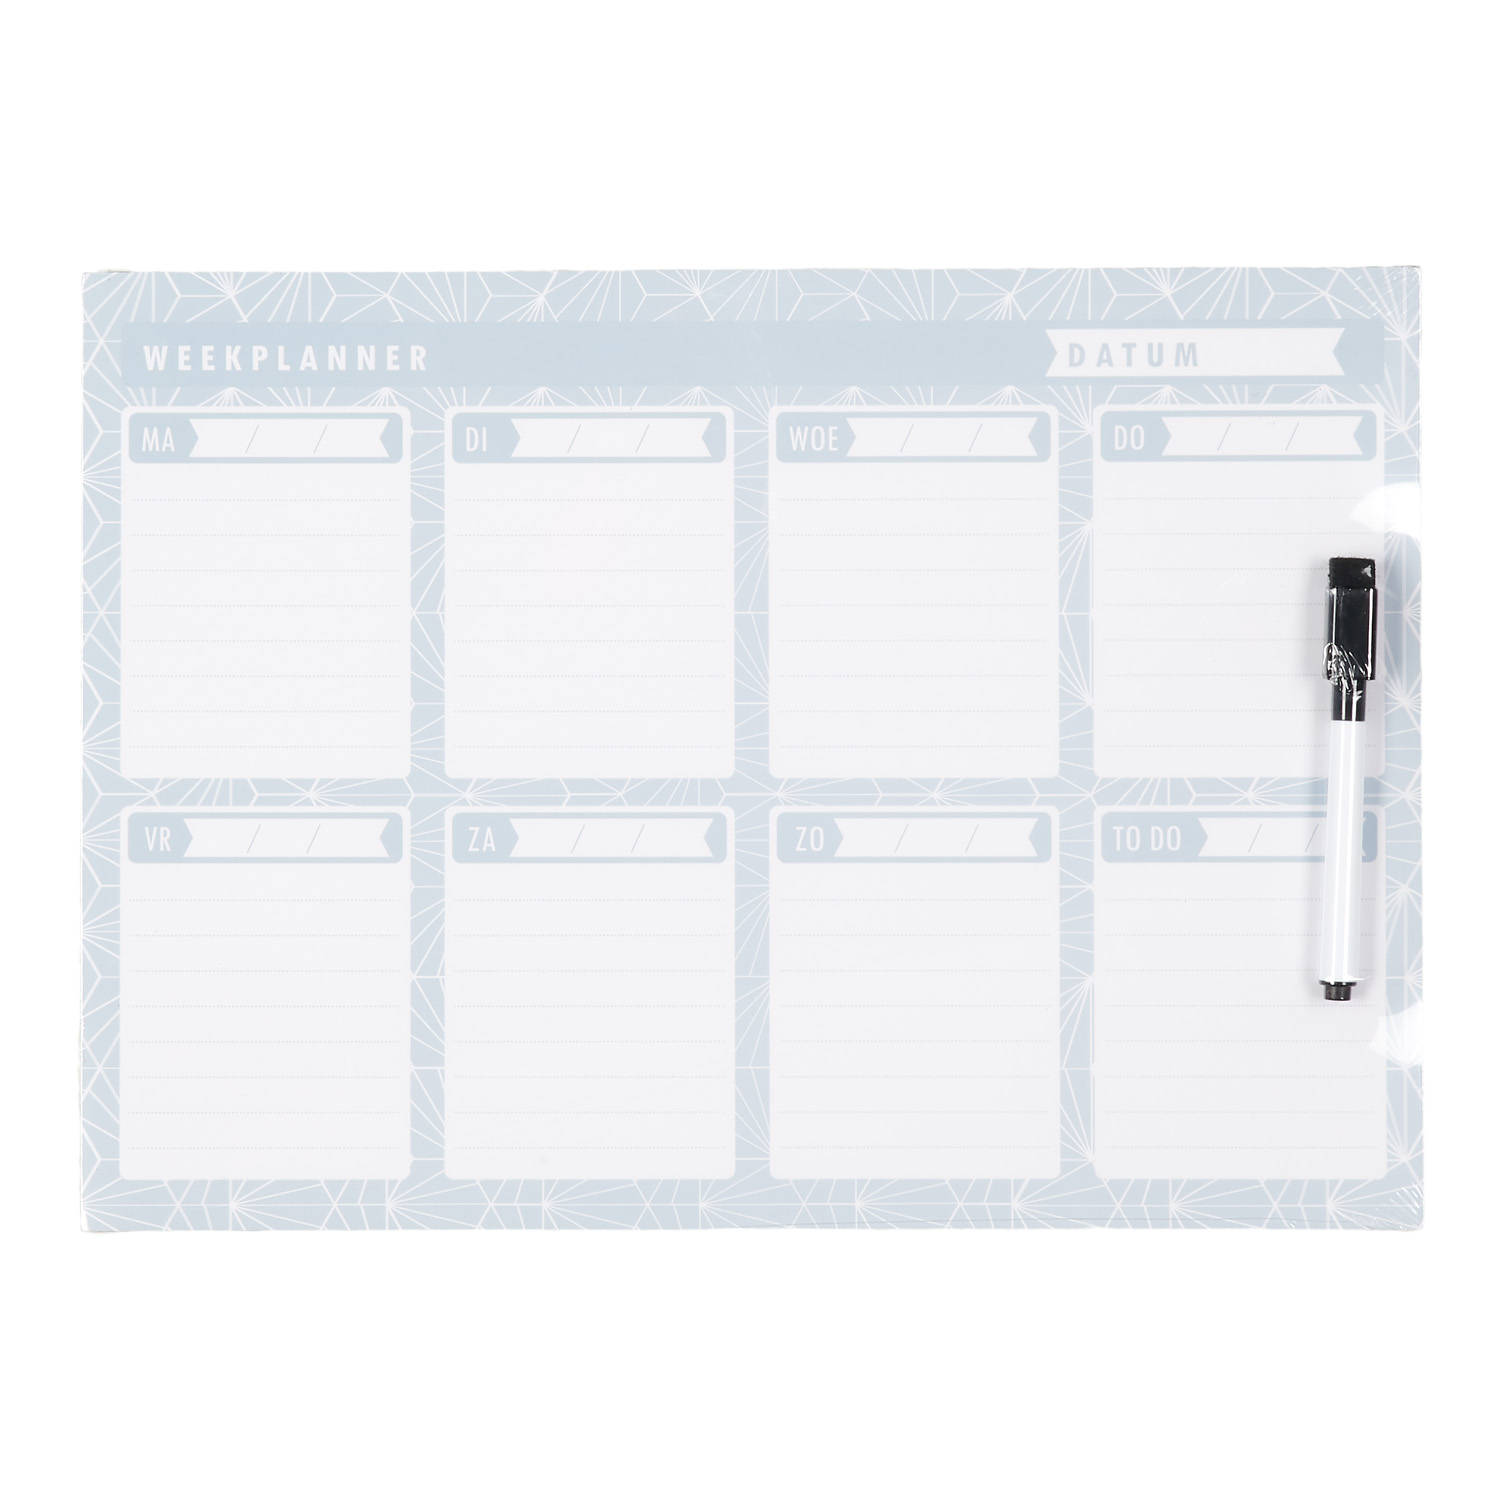 Uitputten Nominaal zeemijl Blokker magnetisch whiteboard met weekplanner | Blokker